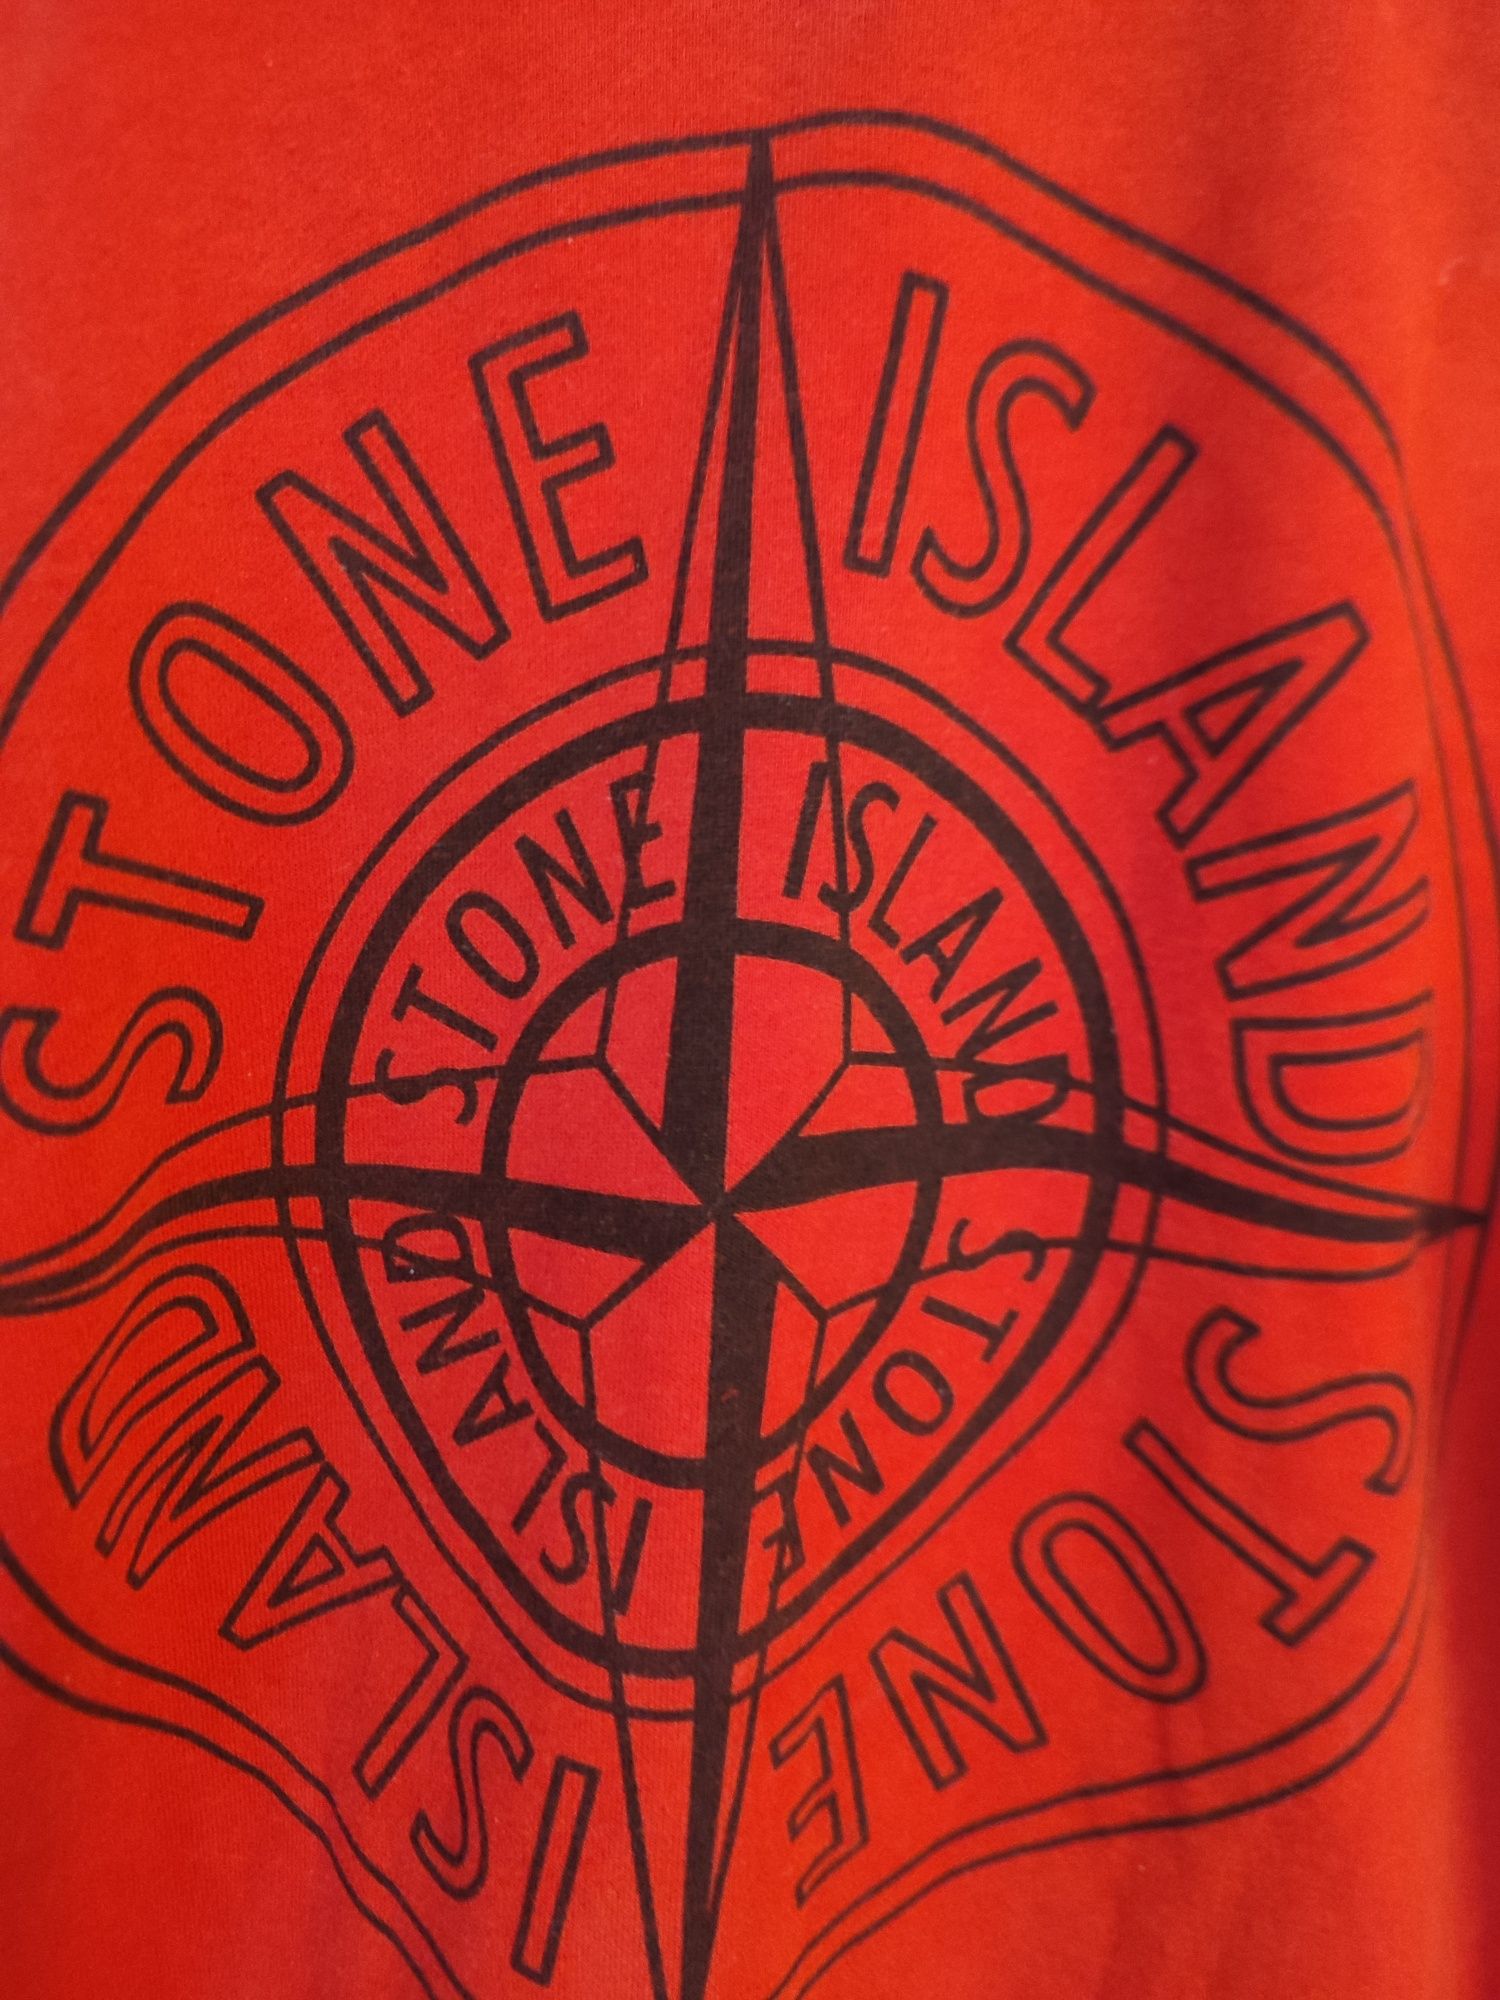 Stone Island bluza unisex M